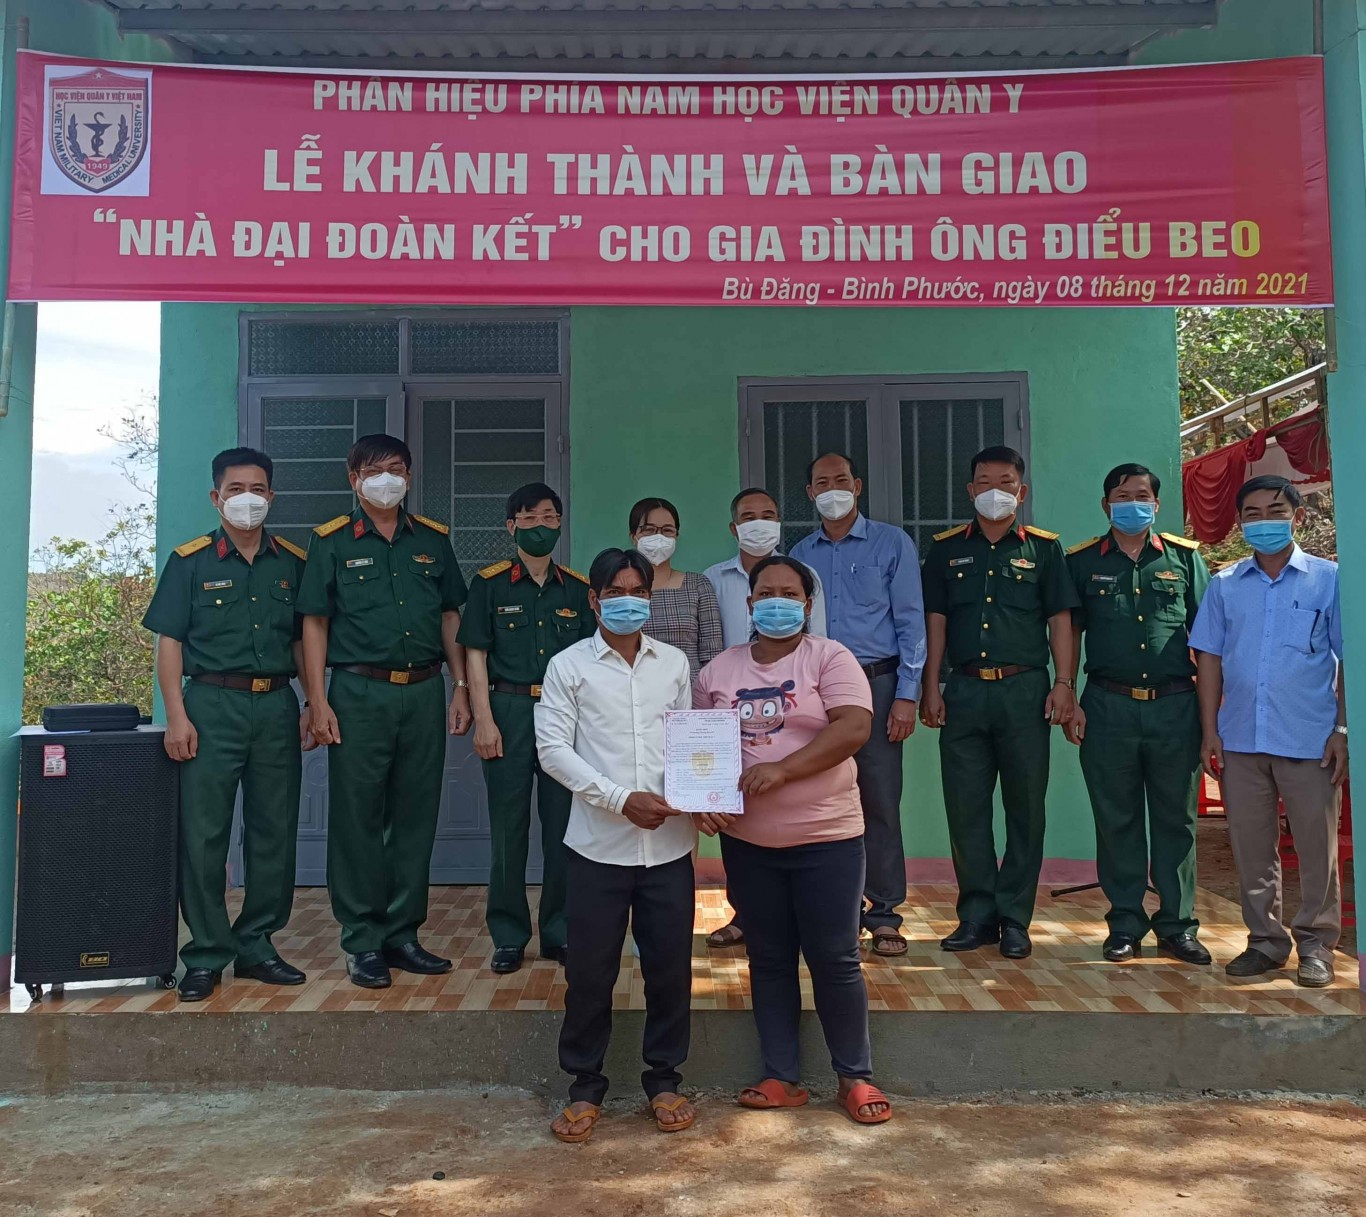 Phân hiệu phía Nam Học viện Quân y trao nhà Đại đoàn kết tại xã Đồng Nai huyện Bù Đăng.